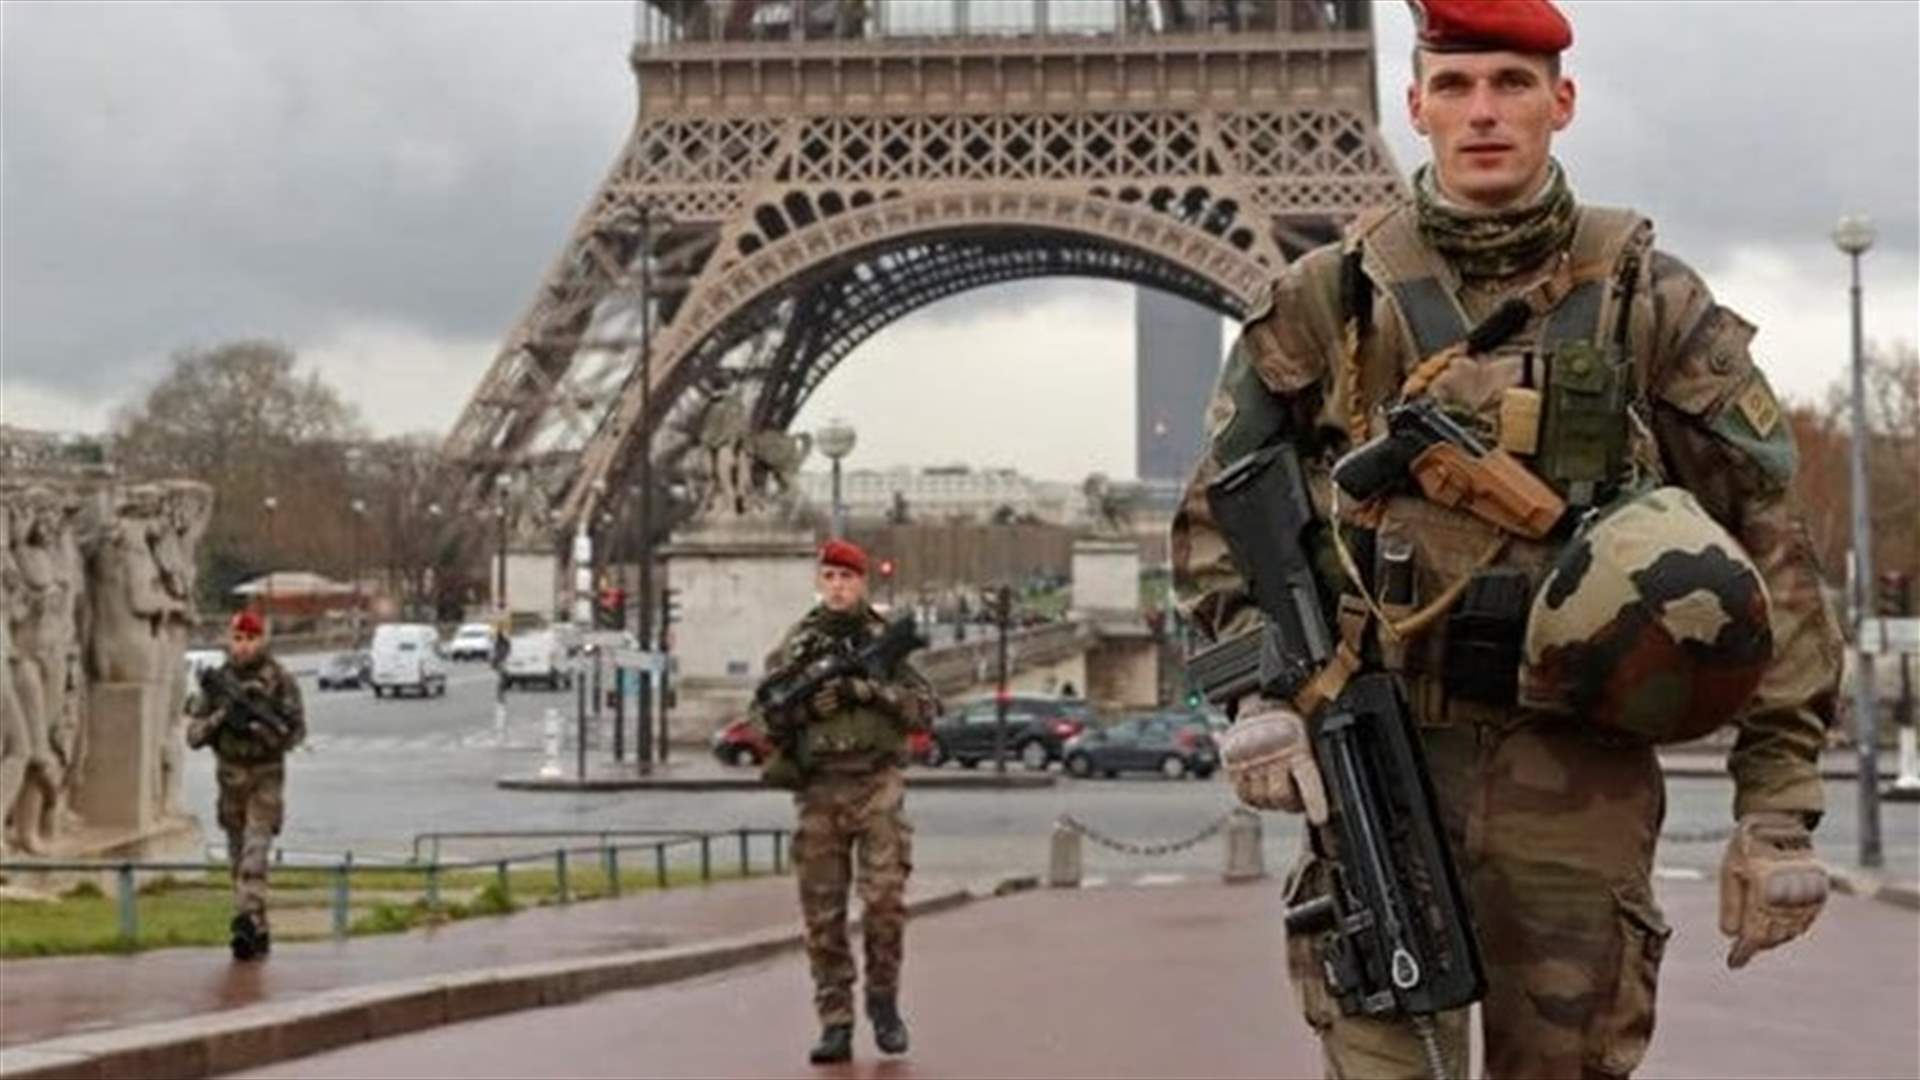 اعتقال 3 أشخاص في فرنسا...هل خططوا لهجوم؟